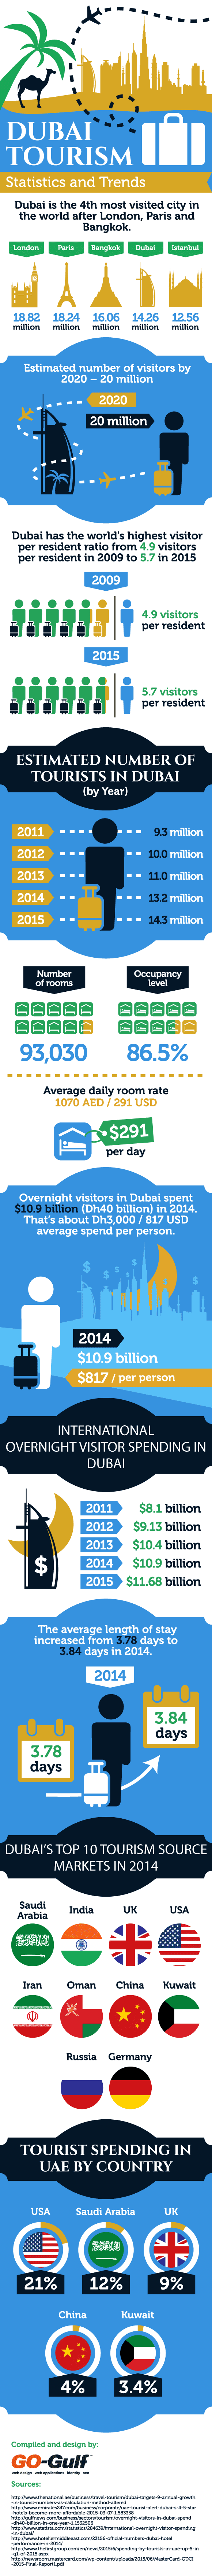 Dubai Tourism Statistics and Trends